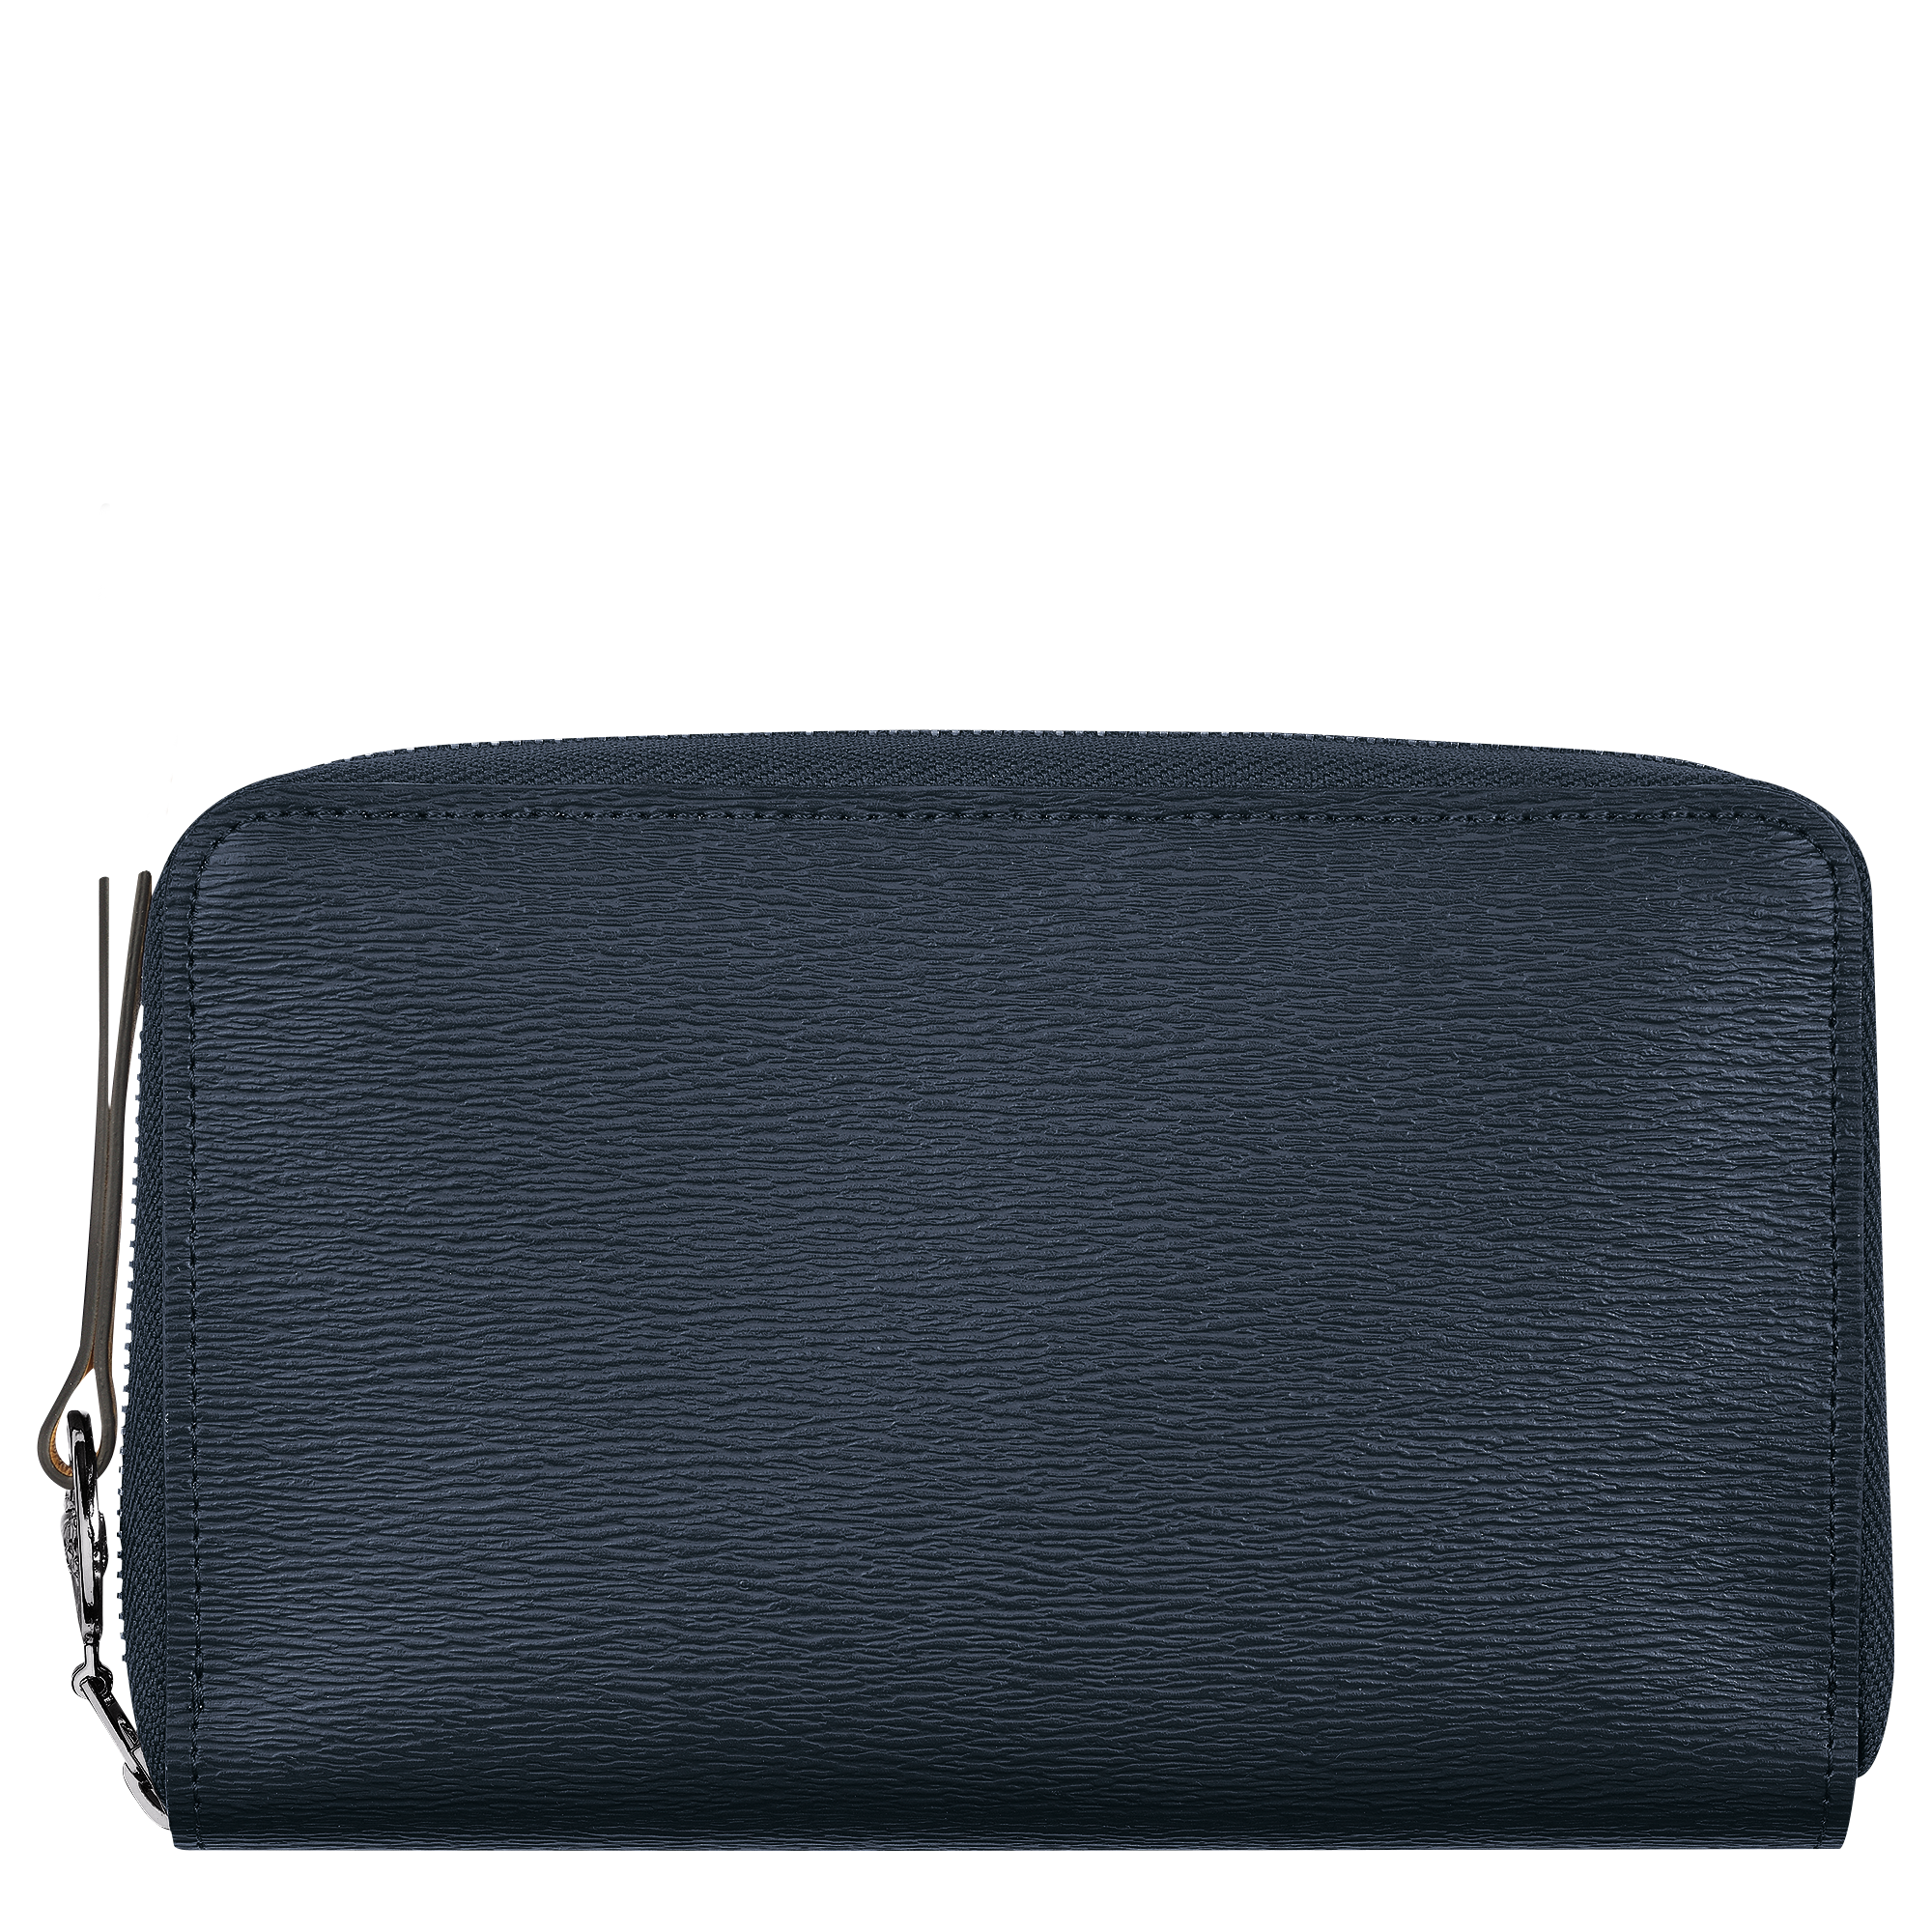 Louis Vuitton Blue Epi Leather Coin Pouch Change Purse Wallet ref